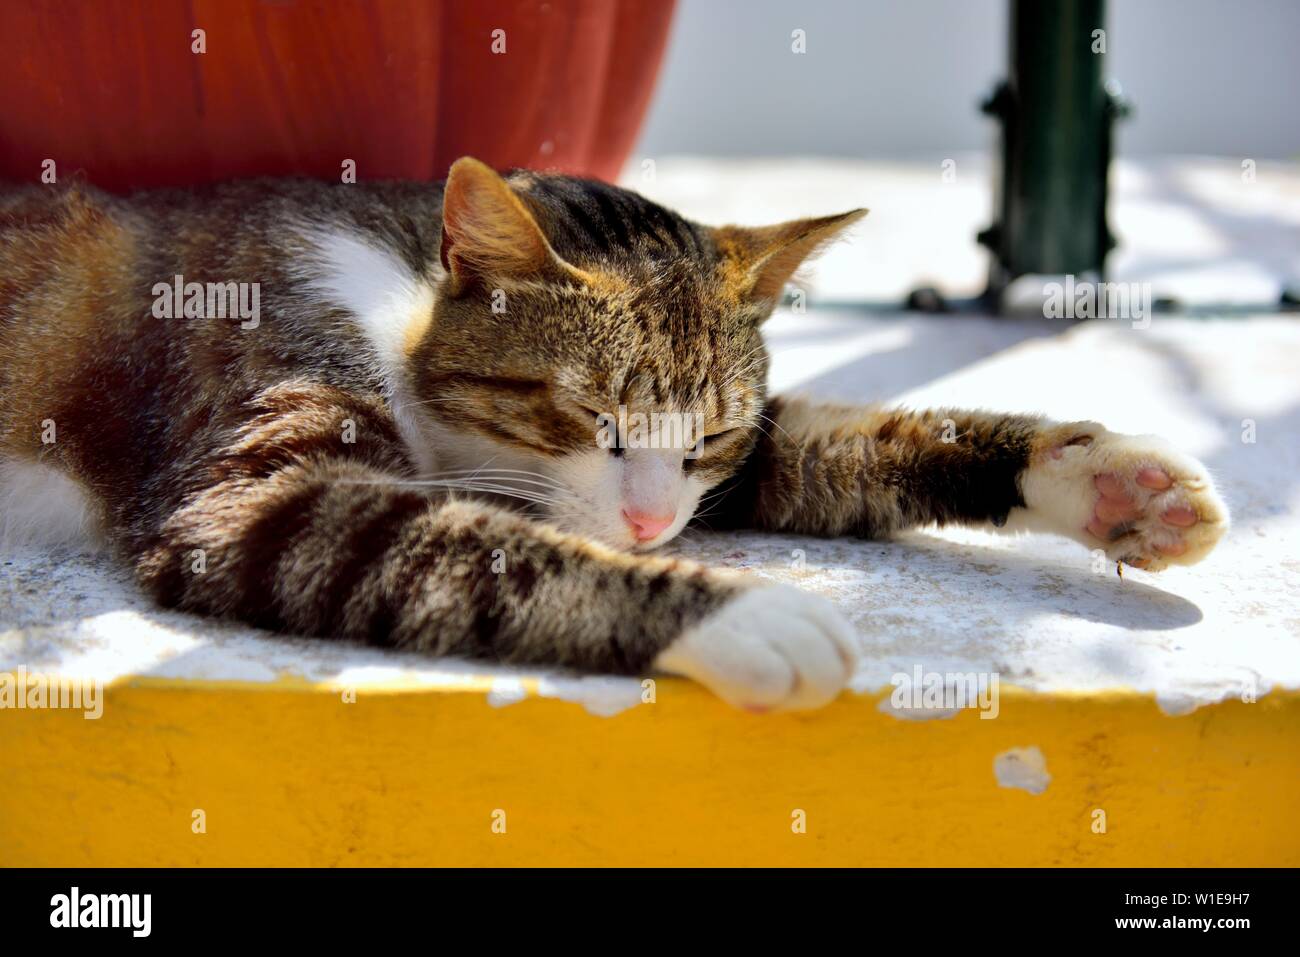 Cat Cat,écaille, les siestes au soleil, les yeux fermés, eau chaude journée ensoleillée,Theotokos Monastère, Monastère de Paleokastritsa, Corfou, Grèce Banque D'Images